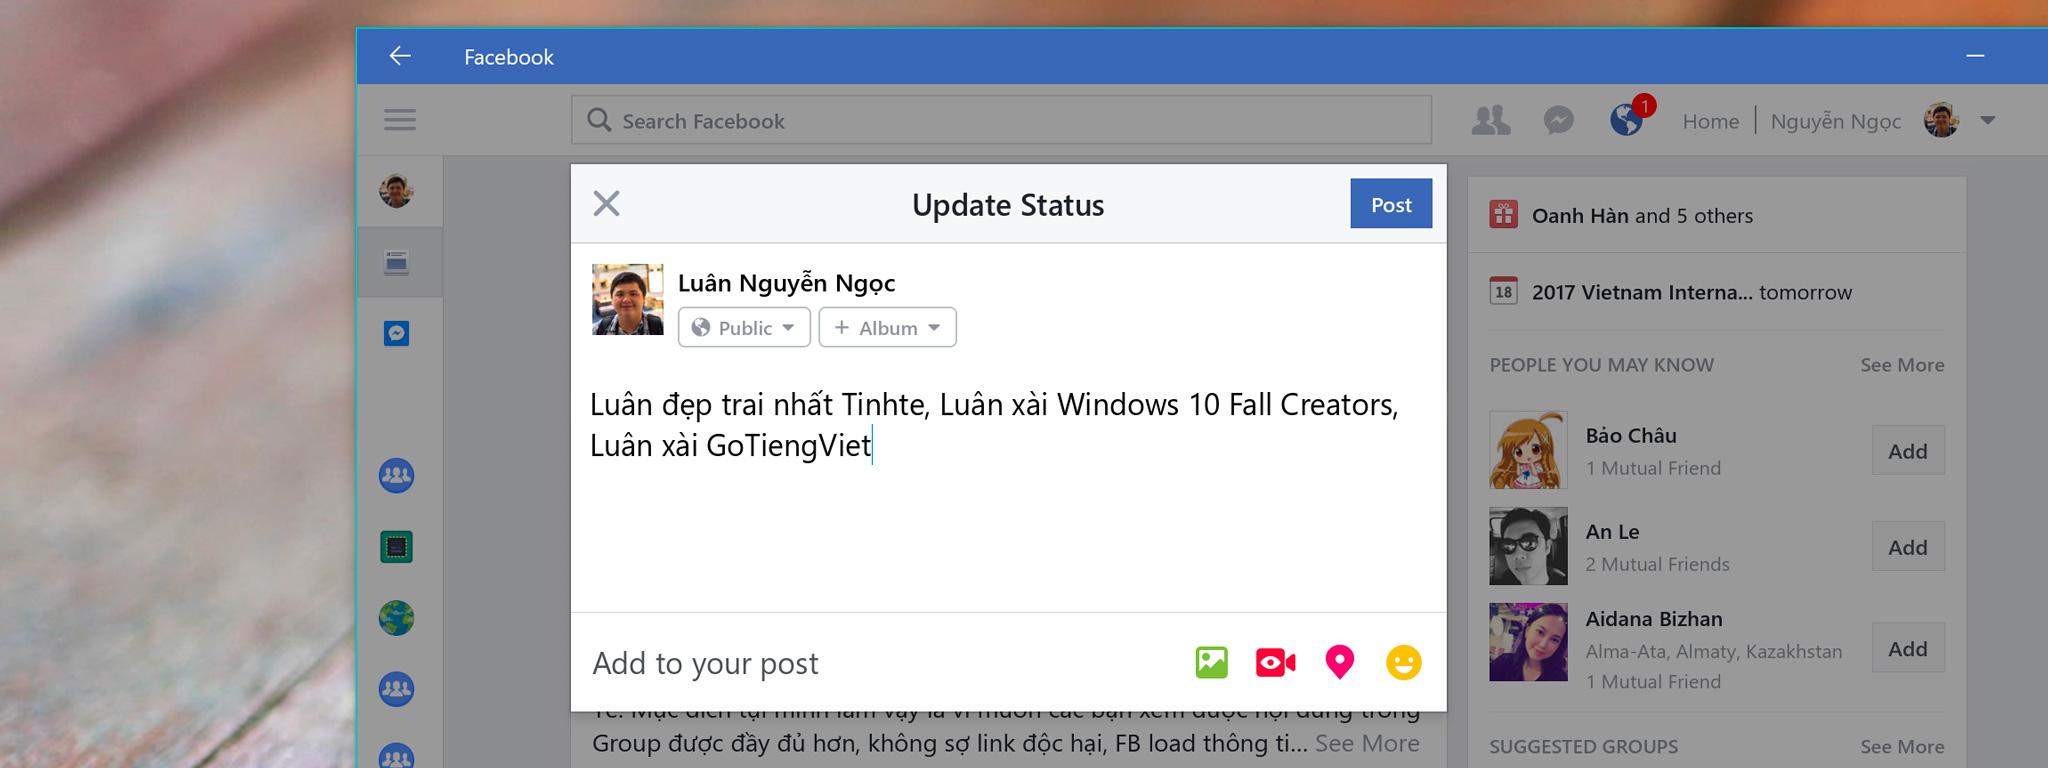 Windows 10 Fall Creators đã khắc phục lỗi nhảy tiếng Việt trong app Windows Store, anh em thì sao?